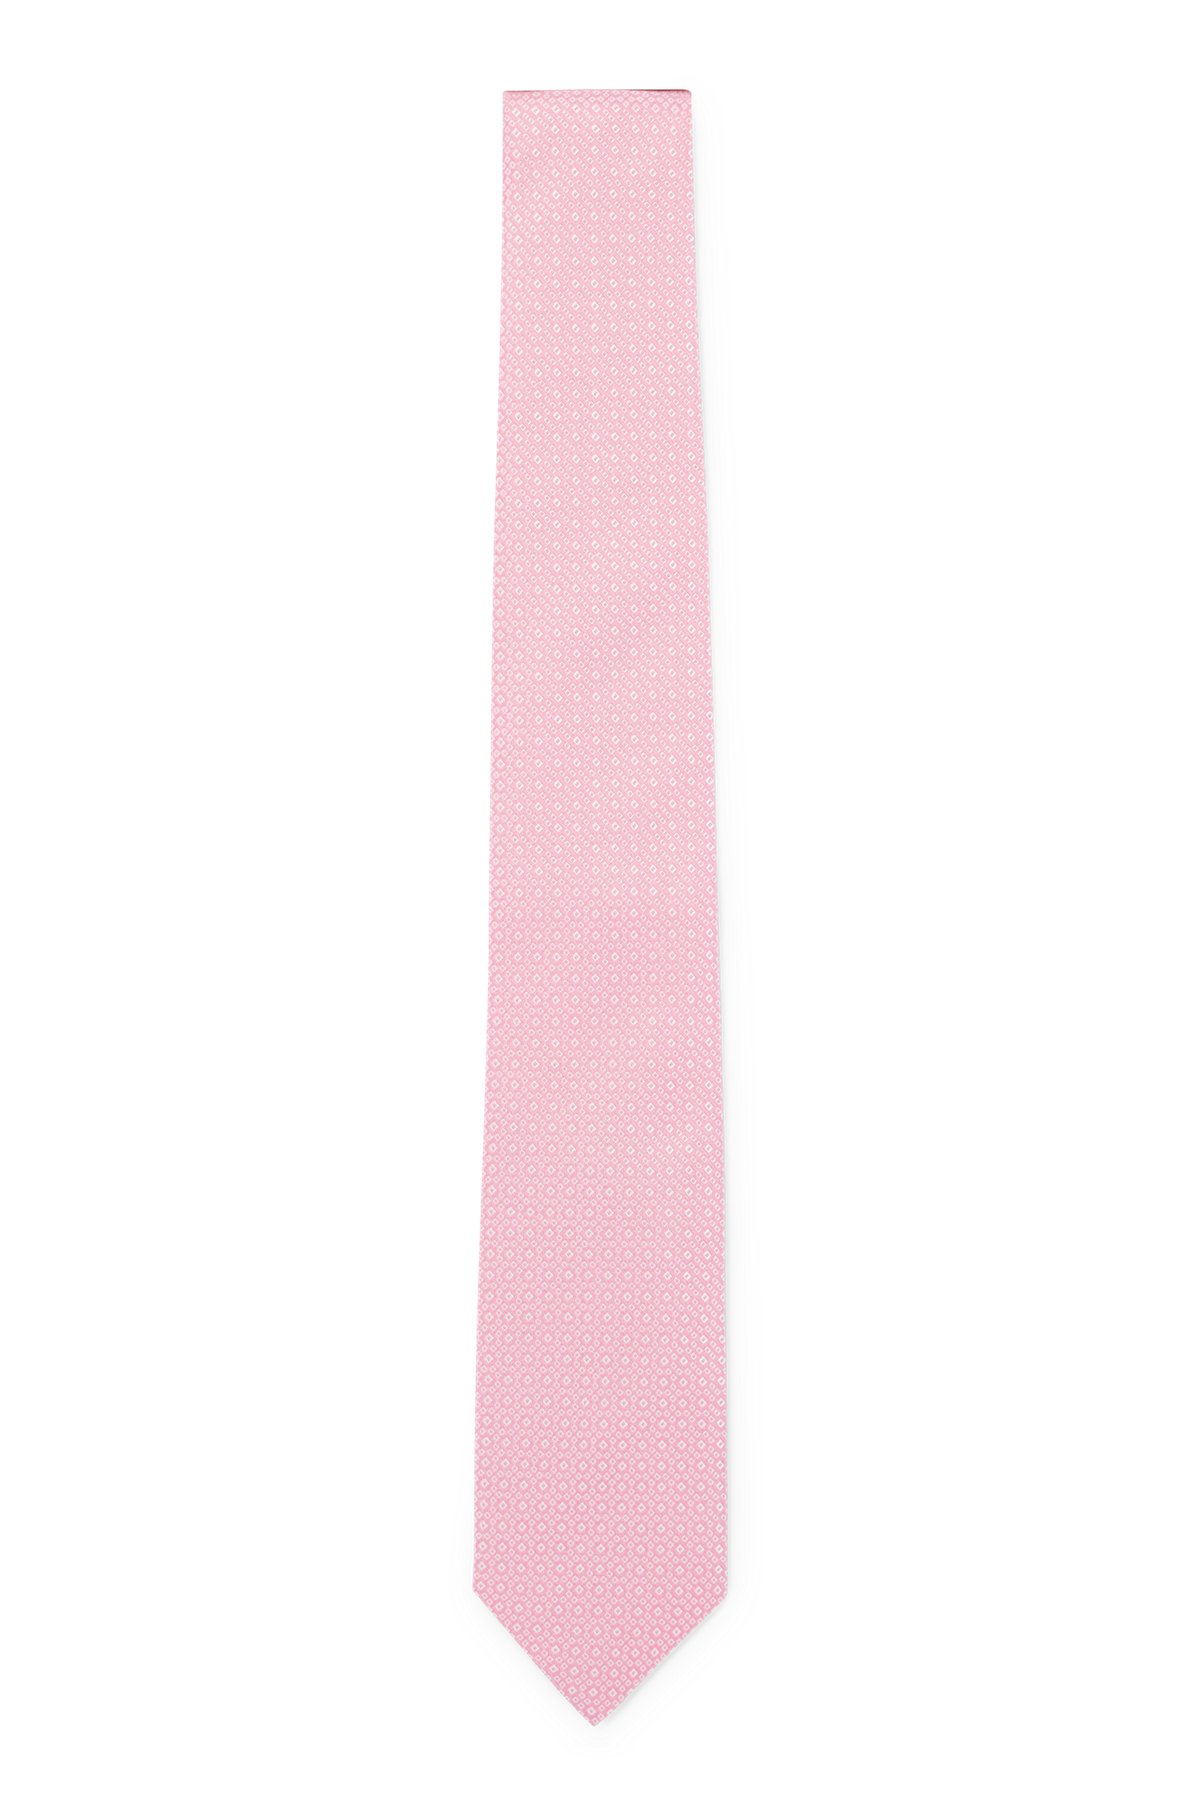 Cravate en soie pure avec micro motif en jacquard tissé, Rose clair